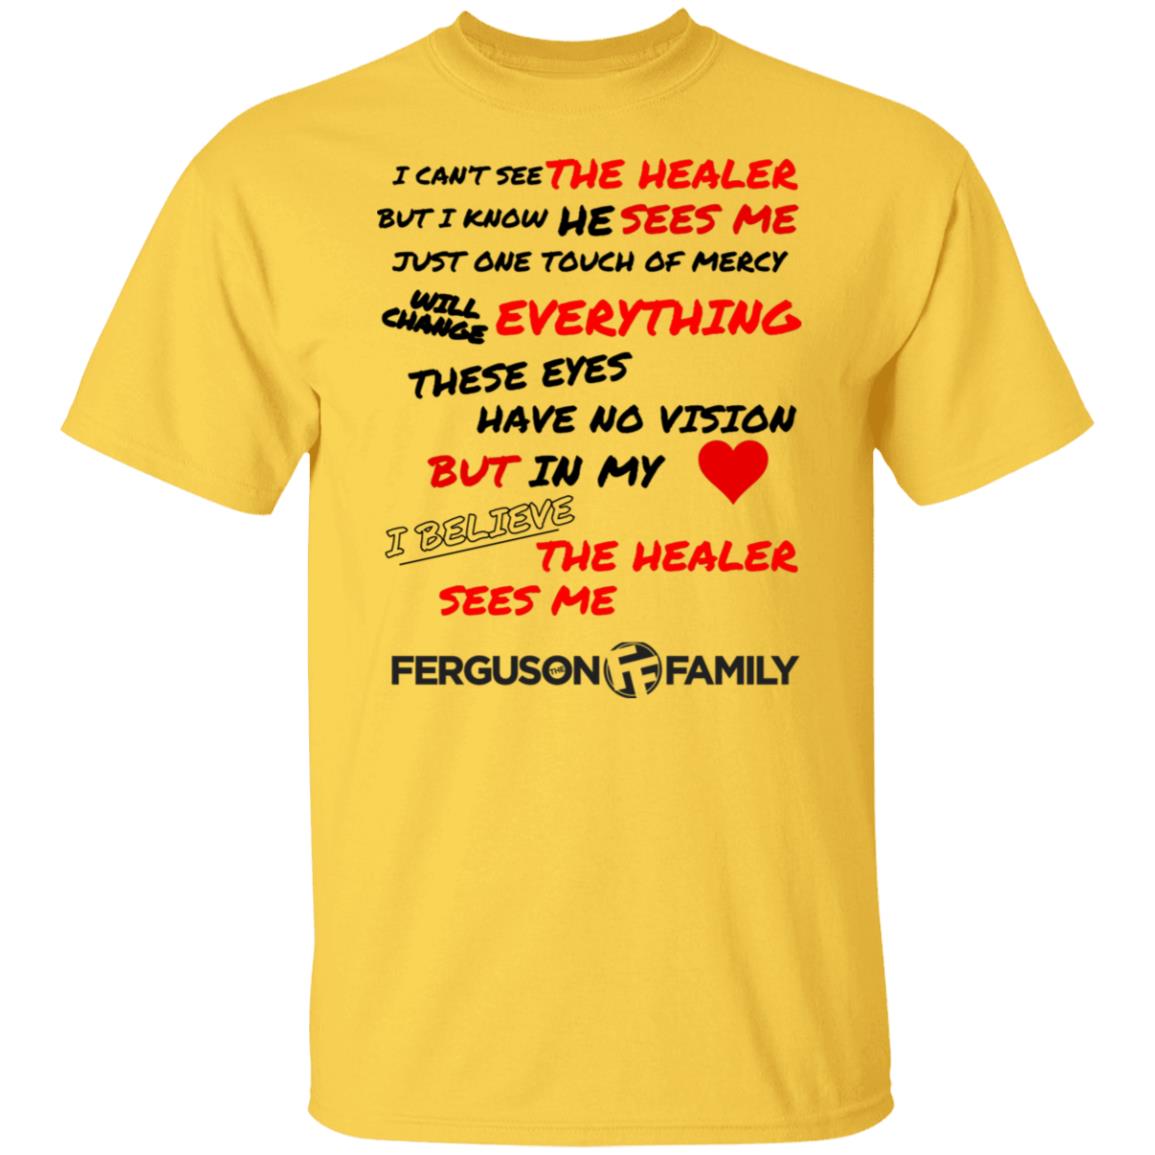 The Ferguson Family - The Healer Sees Me T-Shirt